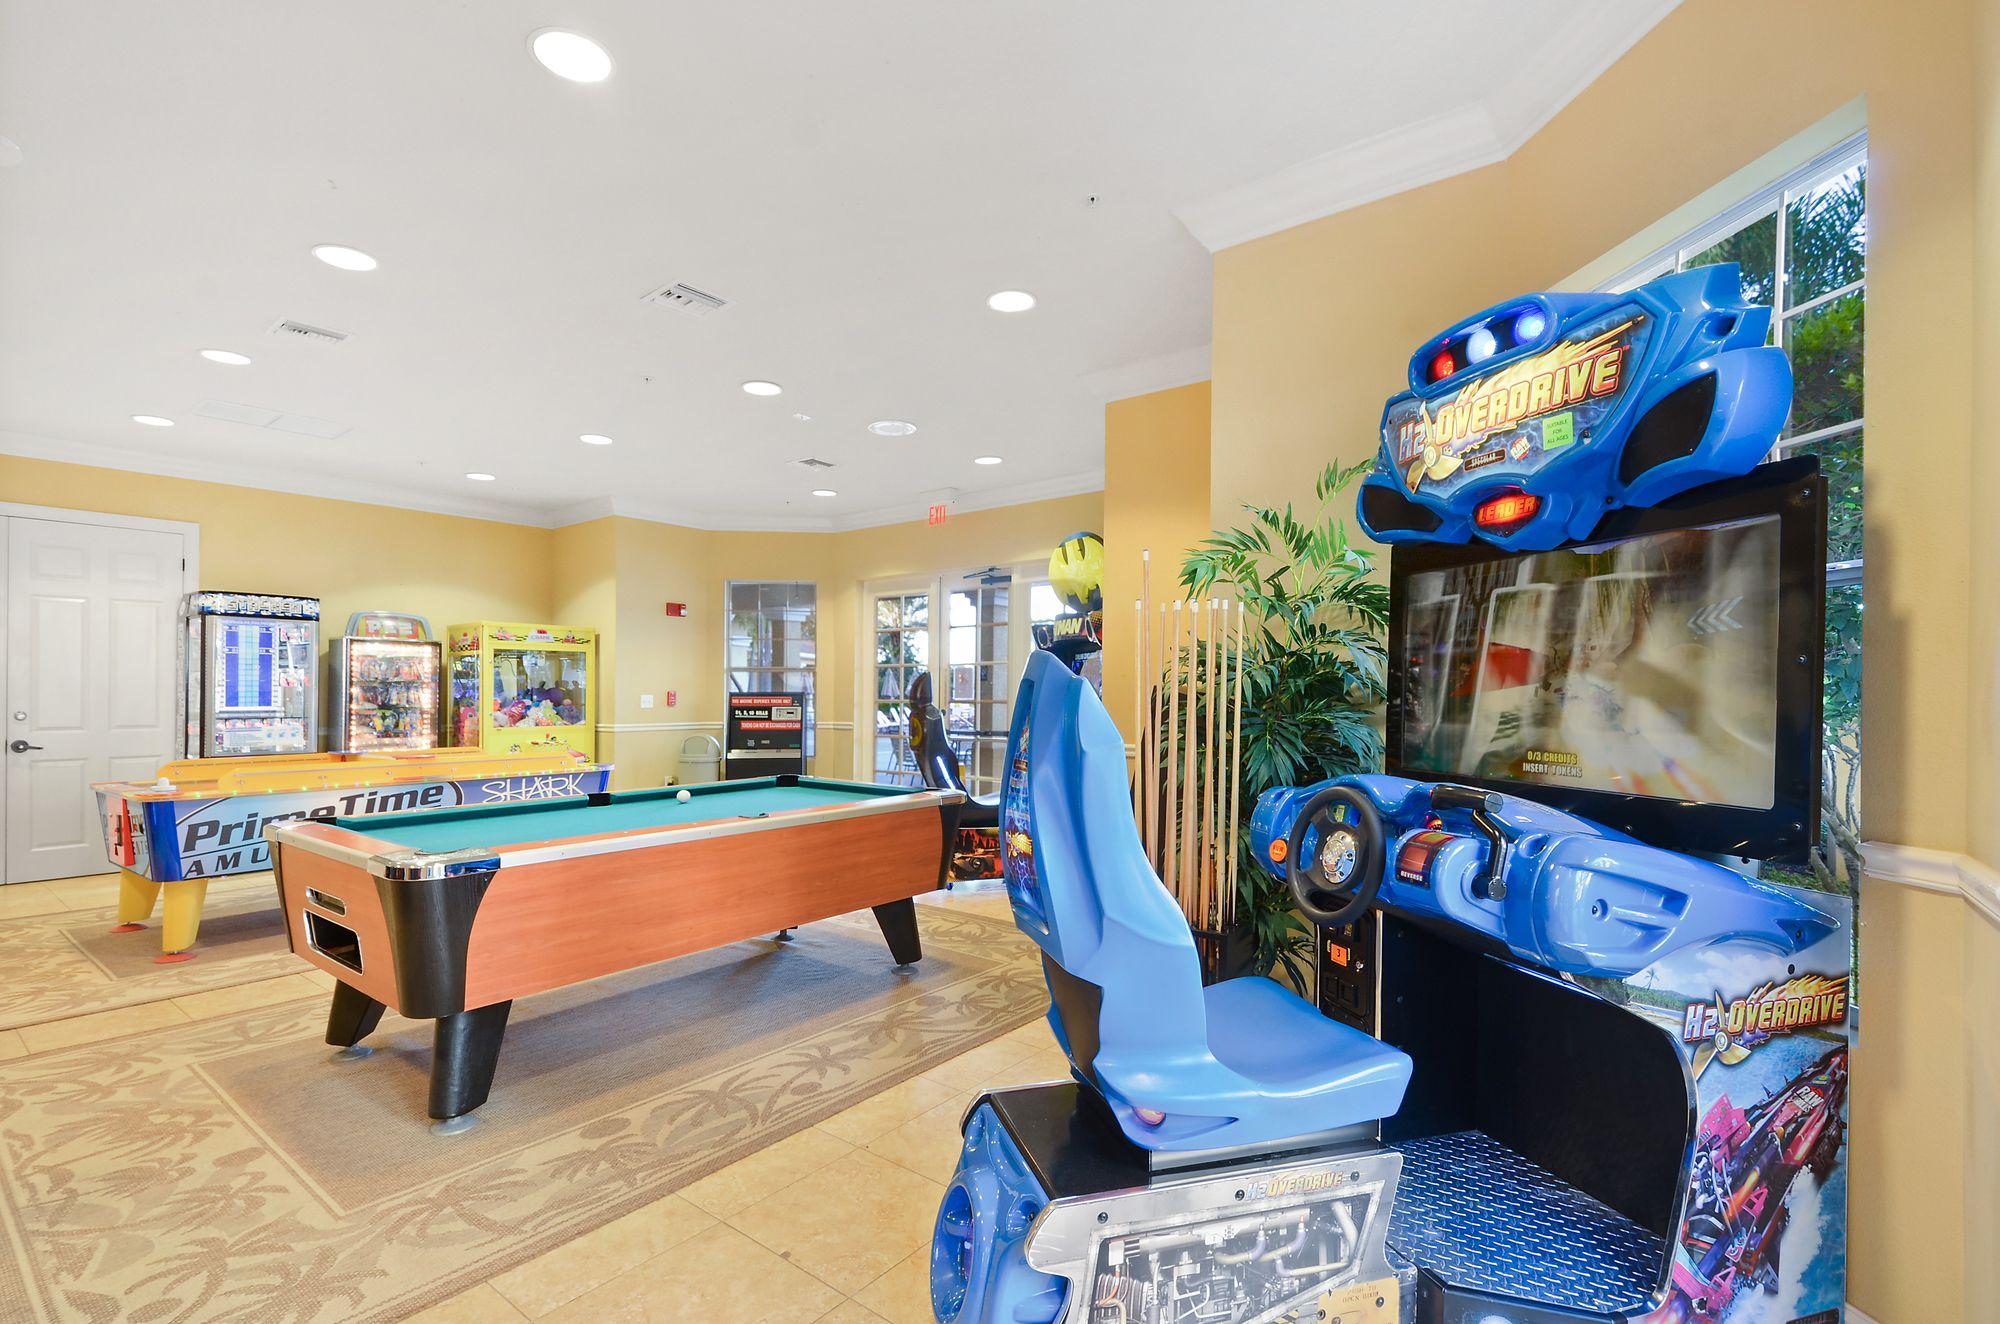 Instalaciones Recreativas Orlando Resort Rentals near Universal